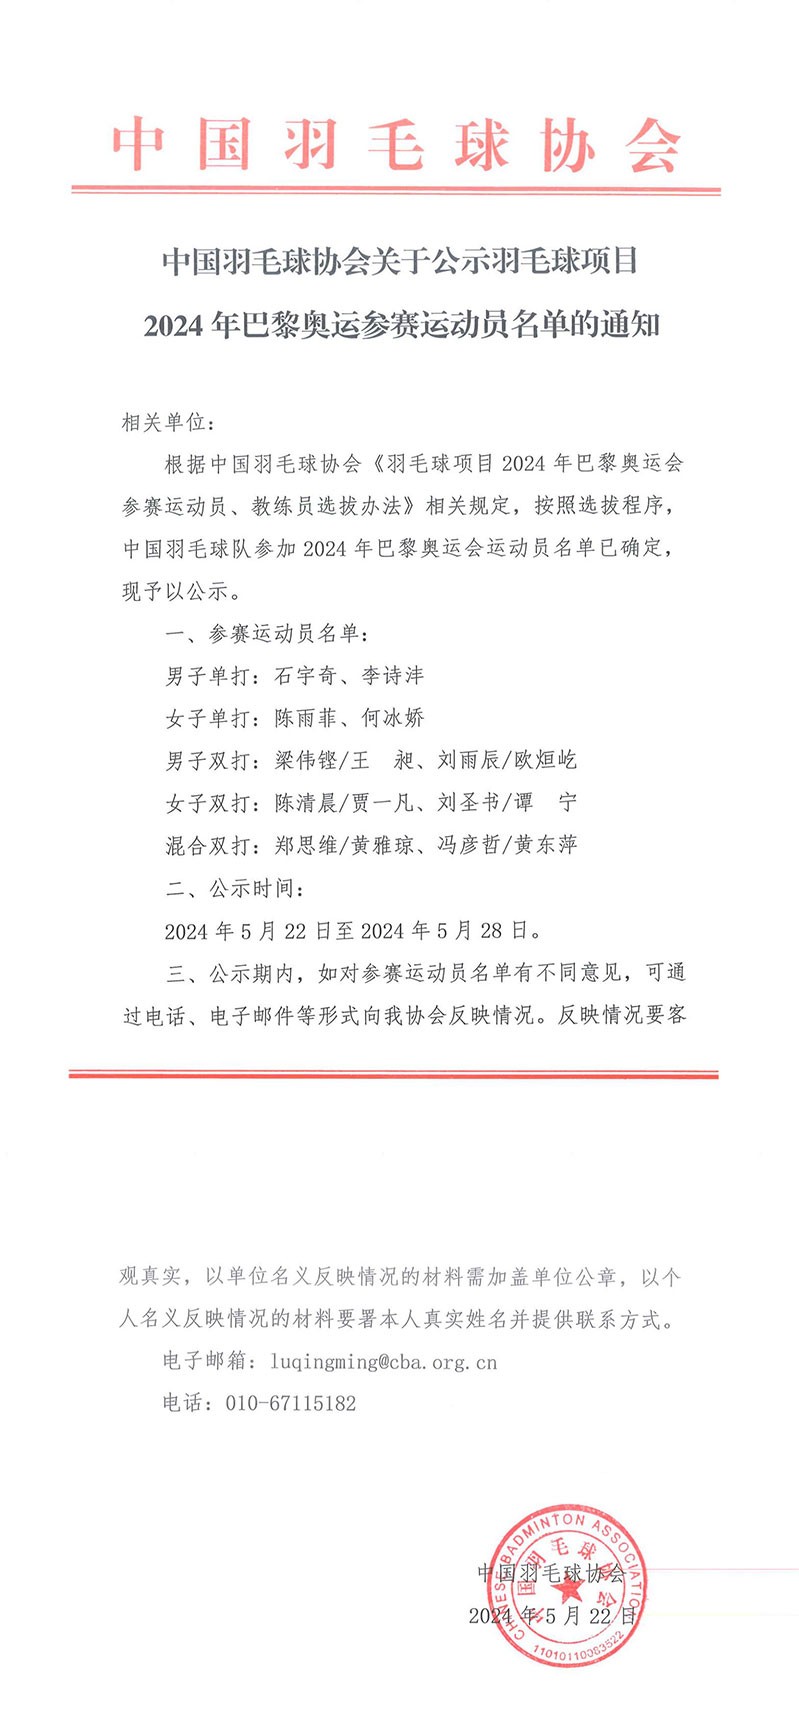 中国羽协公示巴黎奥运会参赛名单，陈雨菲、陈清晨等入选